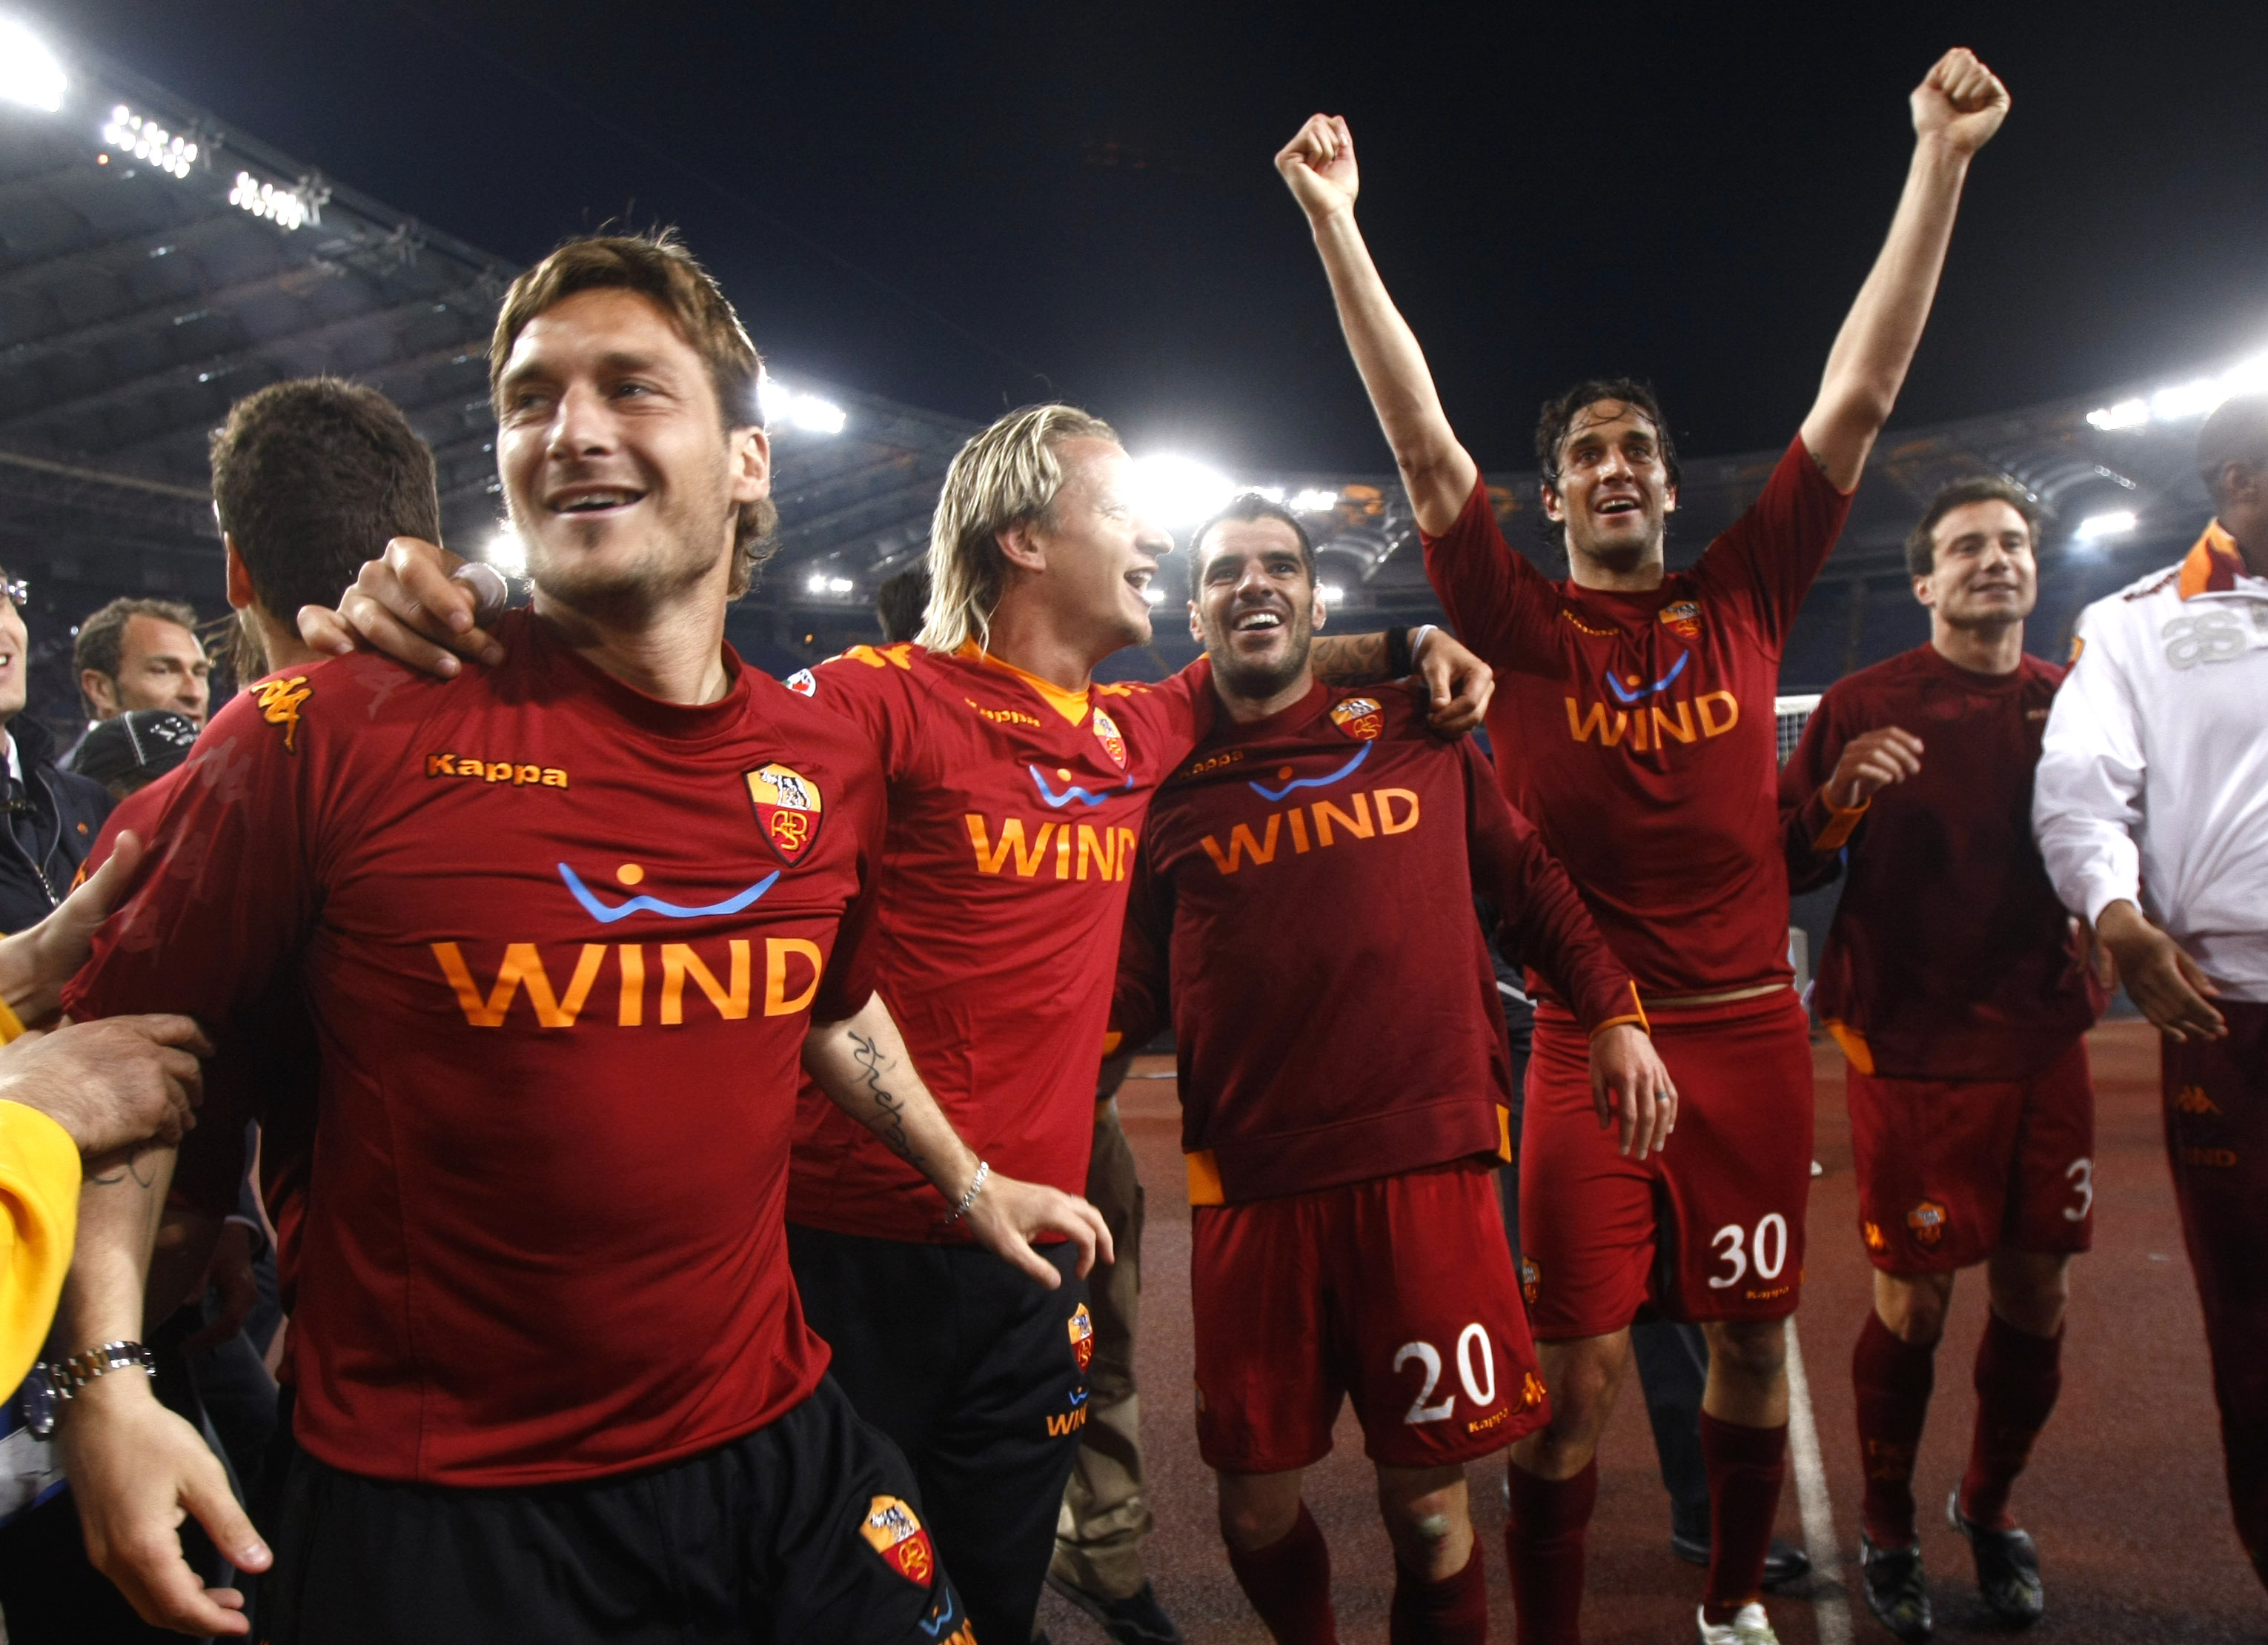 Francesco Totti uppger att han blev upprymd över segern men menade inte att förolämpa någon.